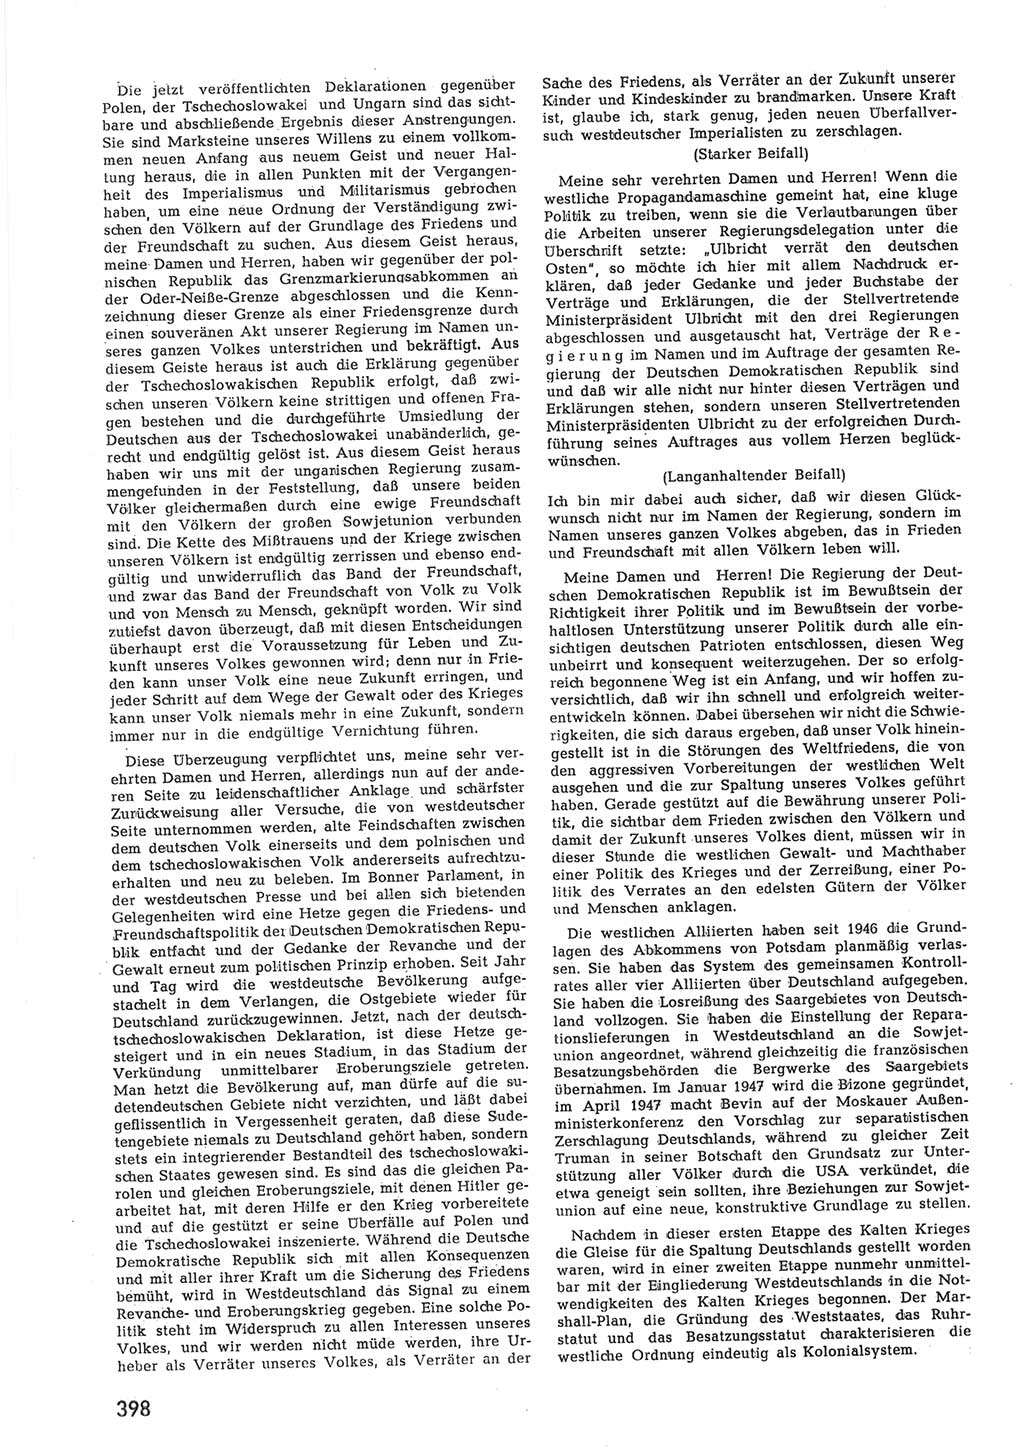 Provisorische Volkskammer (VK) der Deutschen Demokratischen Republik (DDR) 1949-1950, Dokument 416 (Prov. VK DDR 1949-1950, Dok. 416)